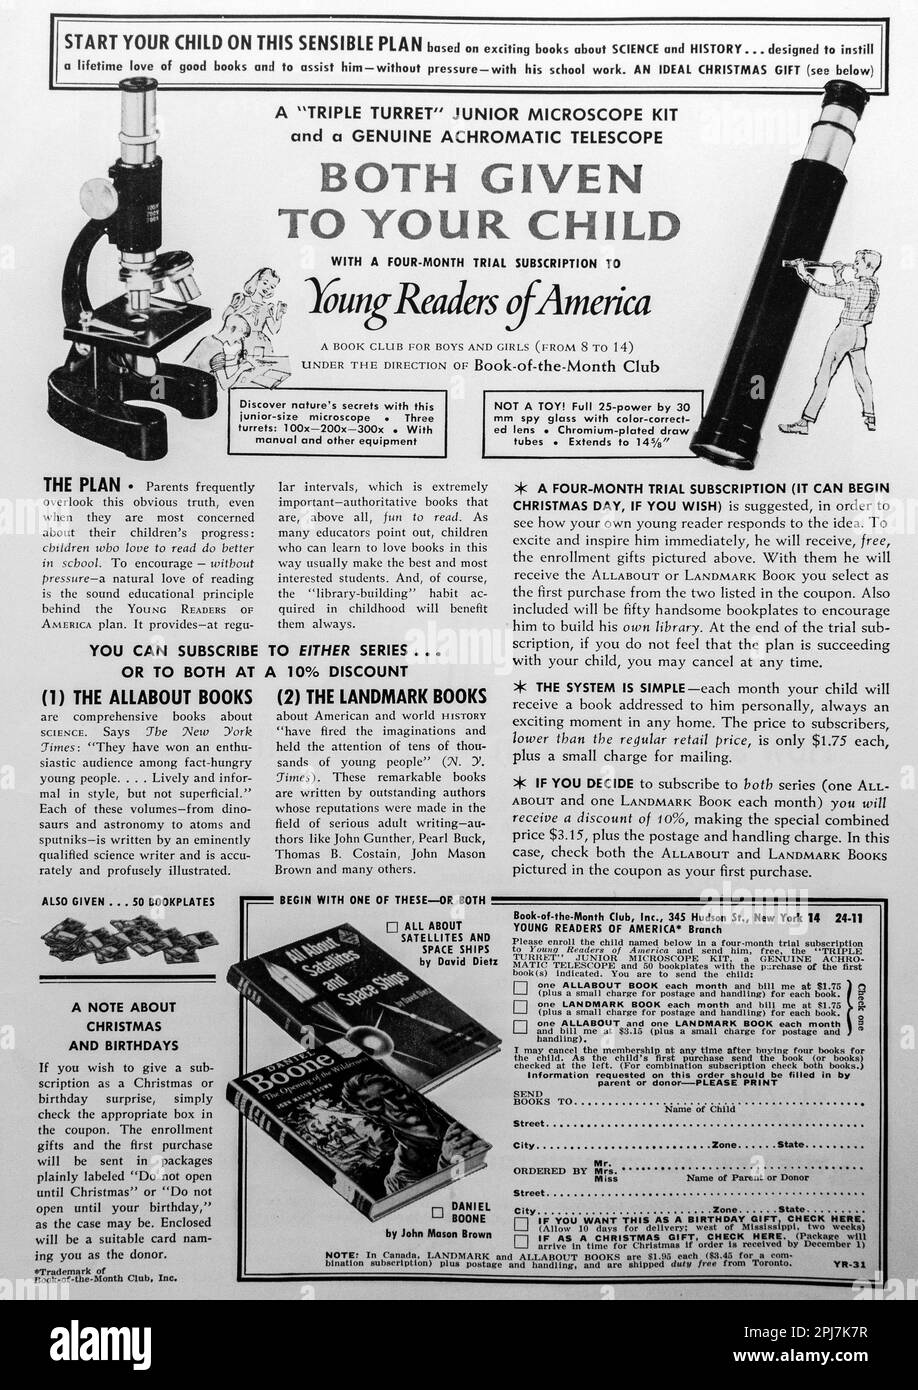 Young Reader of America Gift for children- Mikroskop Kit - Werbung in einer Zeitschrift NatGeo, November 1959 Stockfoto